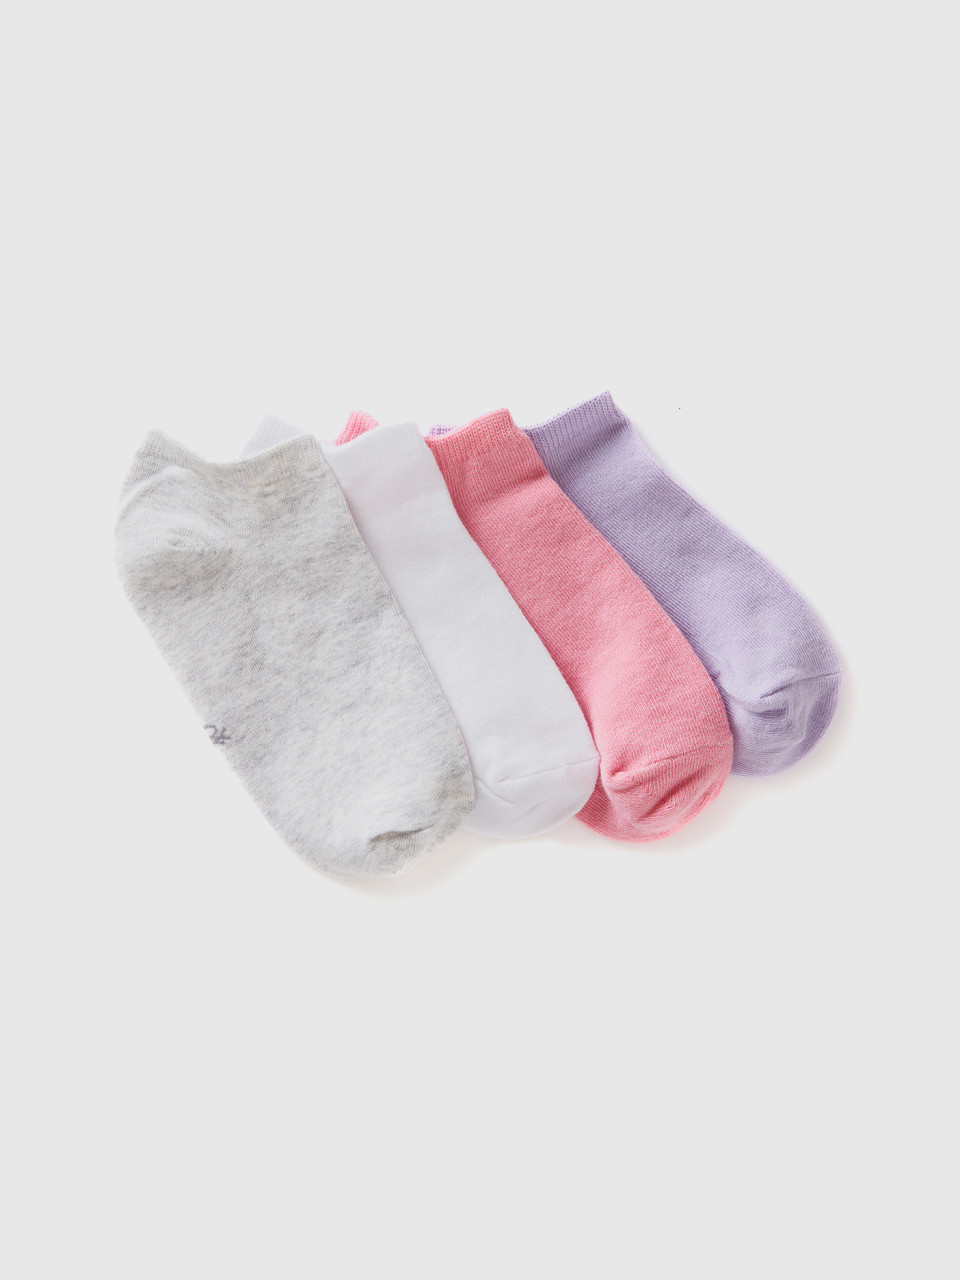 Benetton, Set Of Very Short Socks, Multi-color, Kids